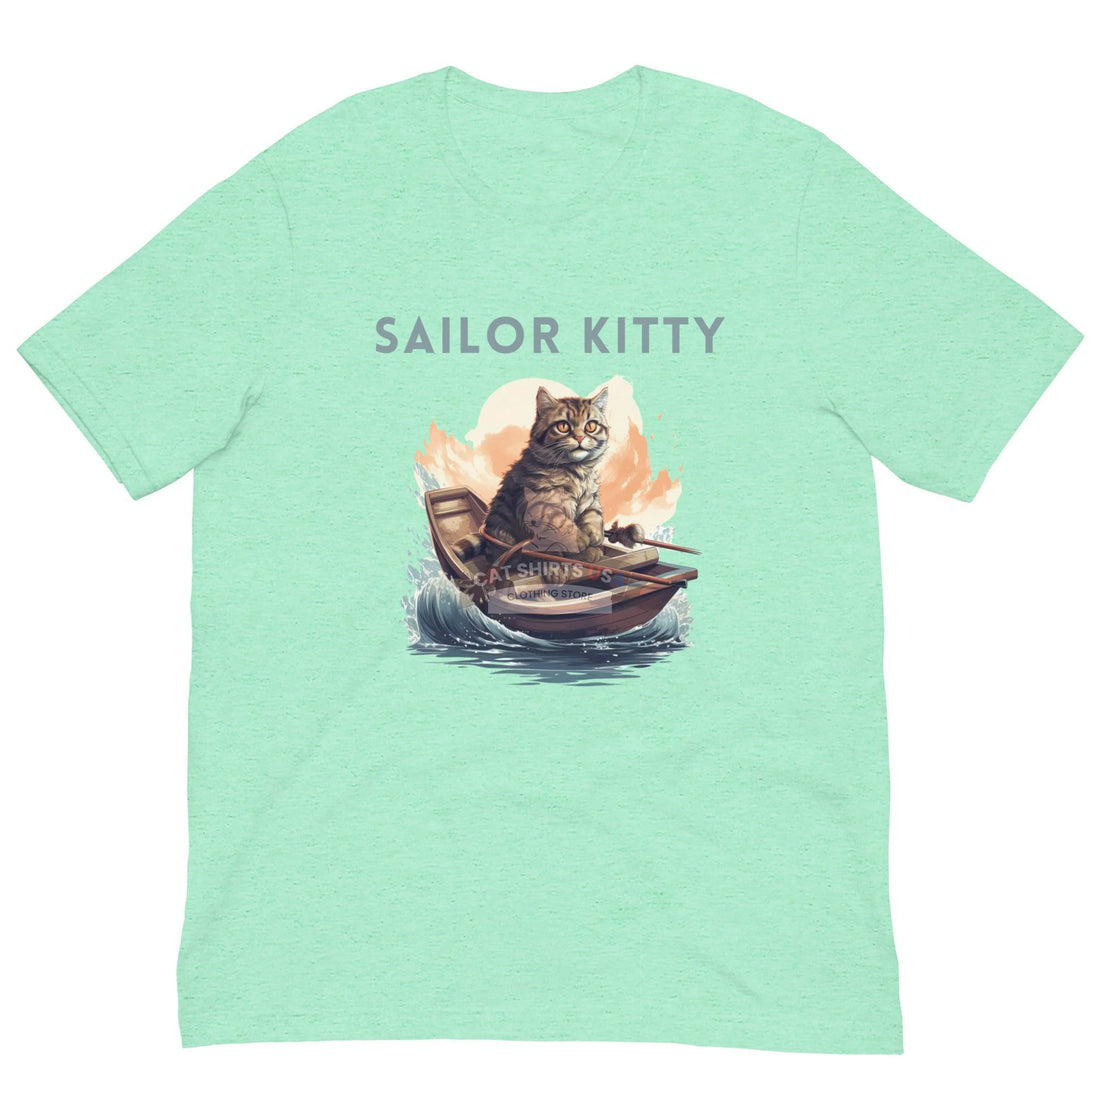 Sailor Kitty Cat Shirt - Cat Shirts USA